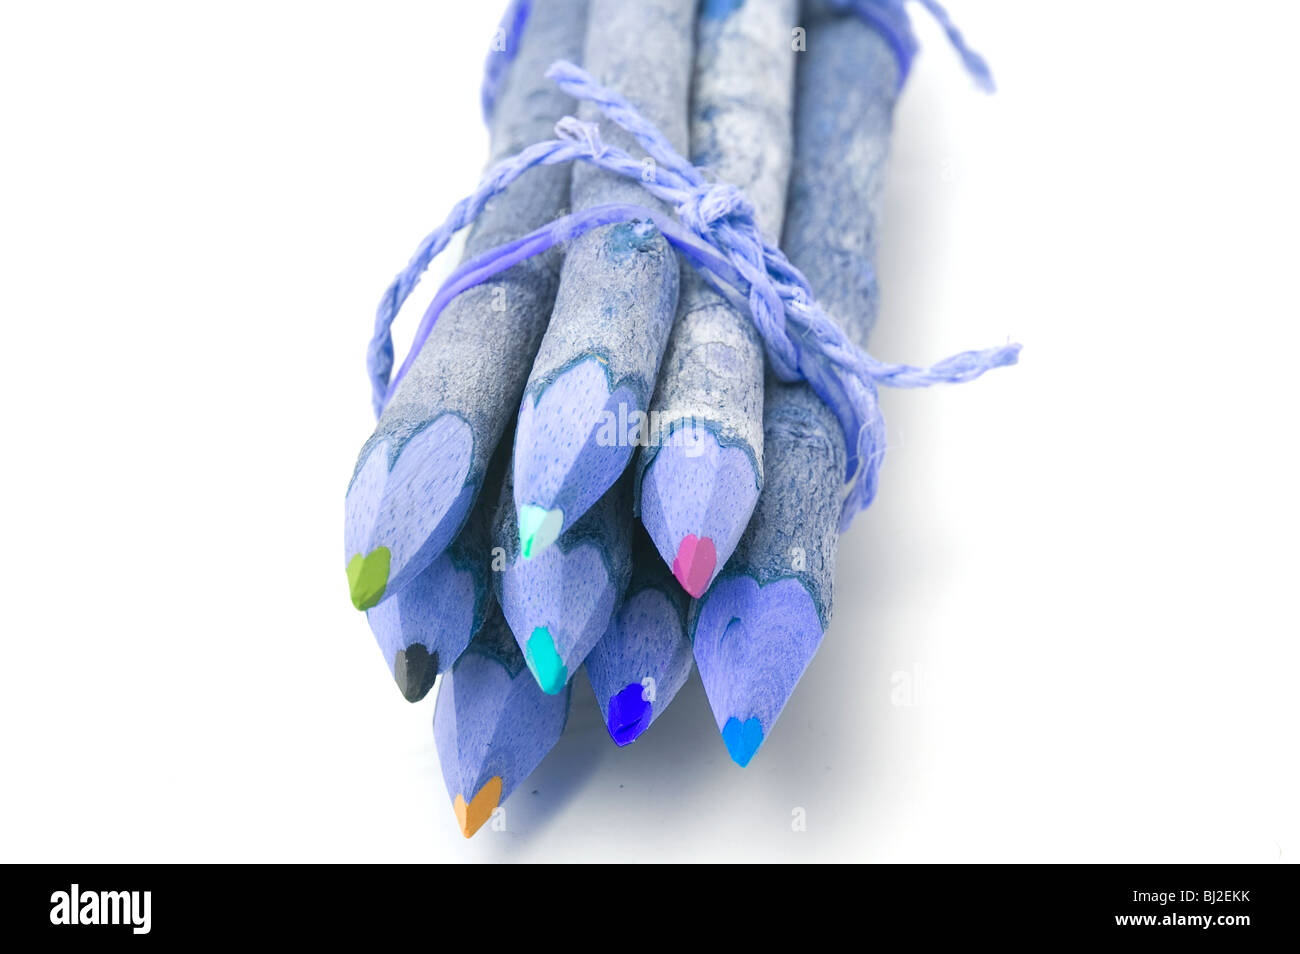 Crayons de couleur, fait de bois, regroupés, close-up avec une teinte bleu Banque D'Images